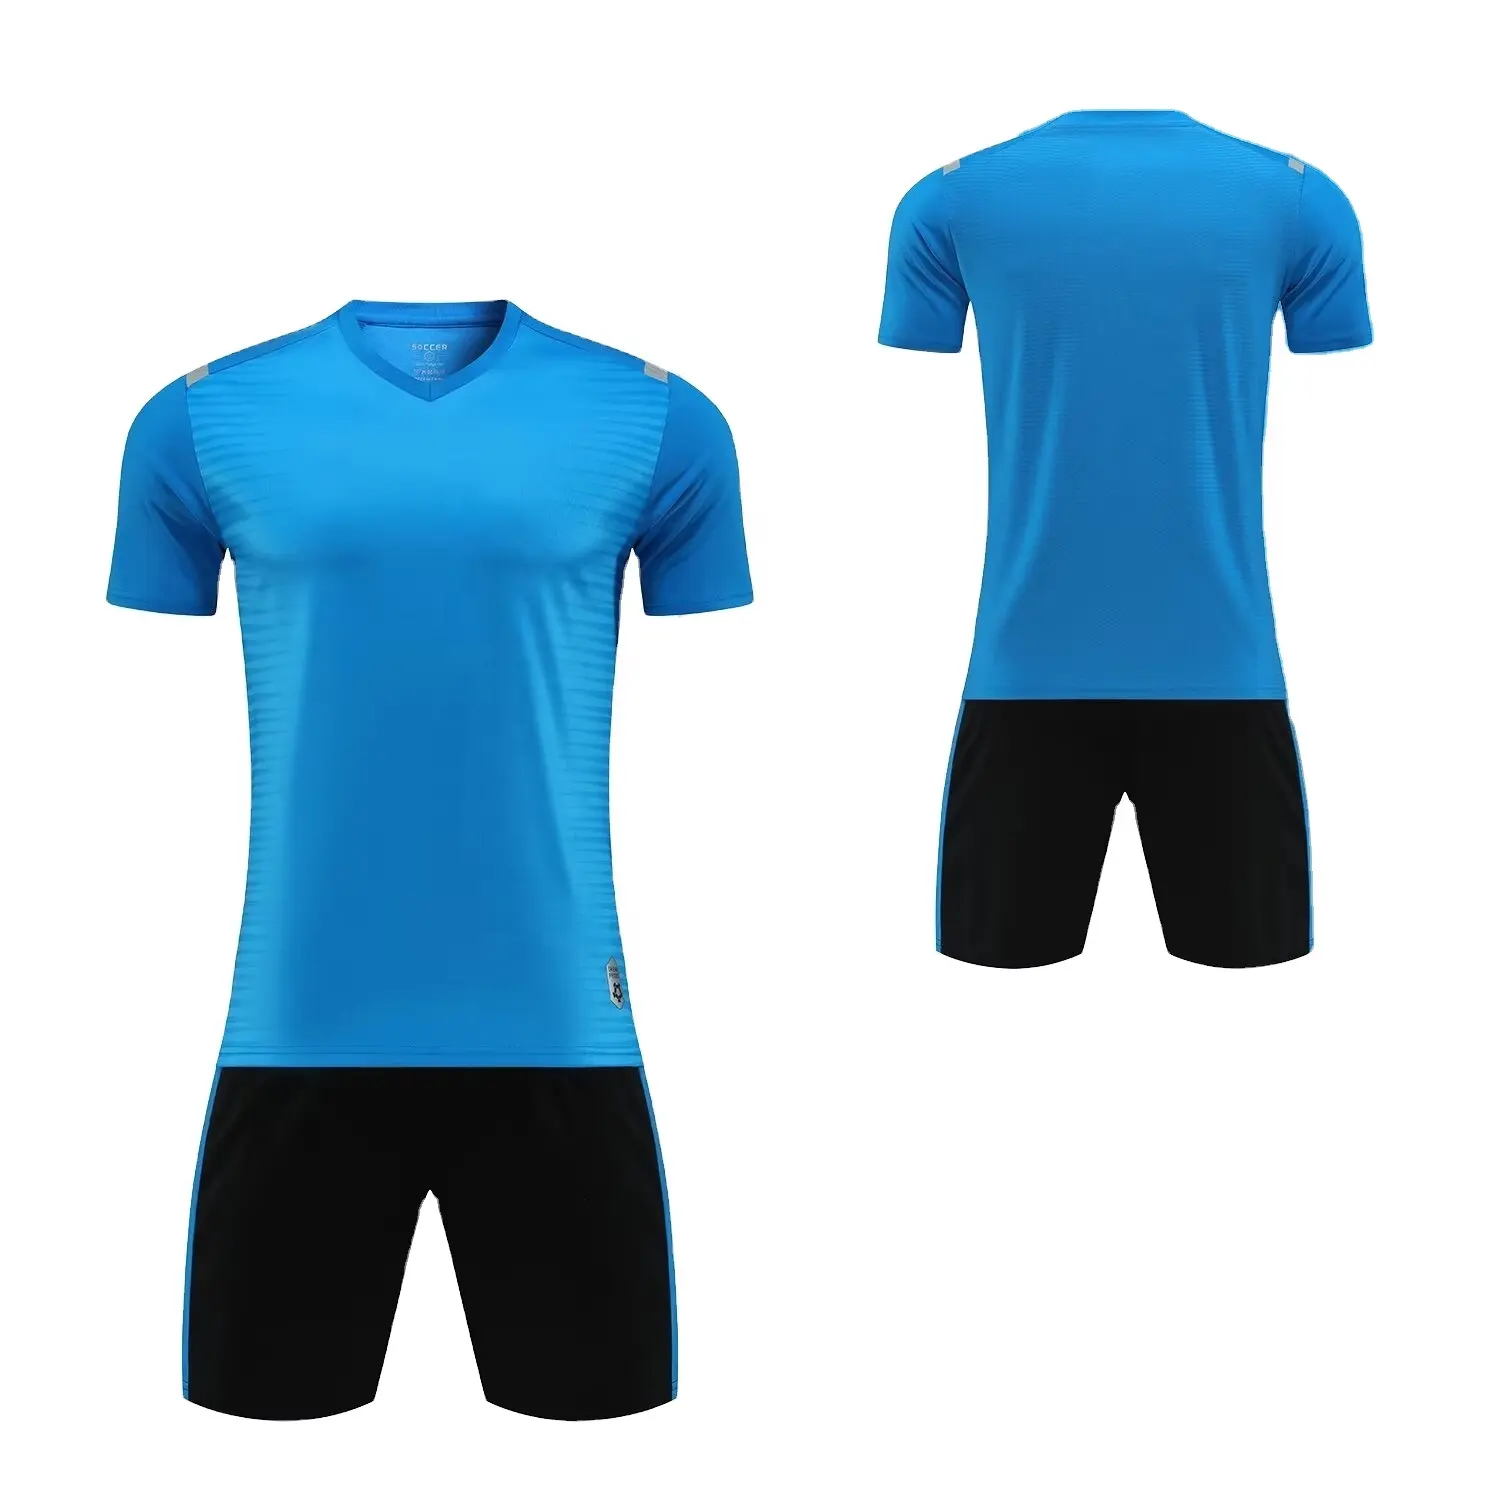 24-25 compra caliente de camiseta de fútbol de alta calidad para todo el equipo azul cielo niños adultos kit completo de fútbol